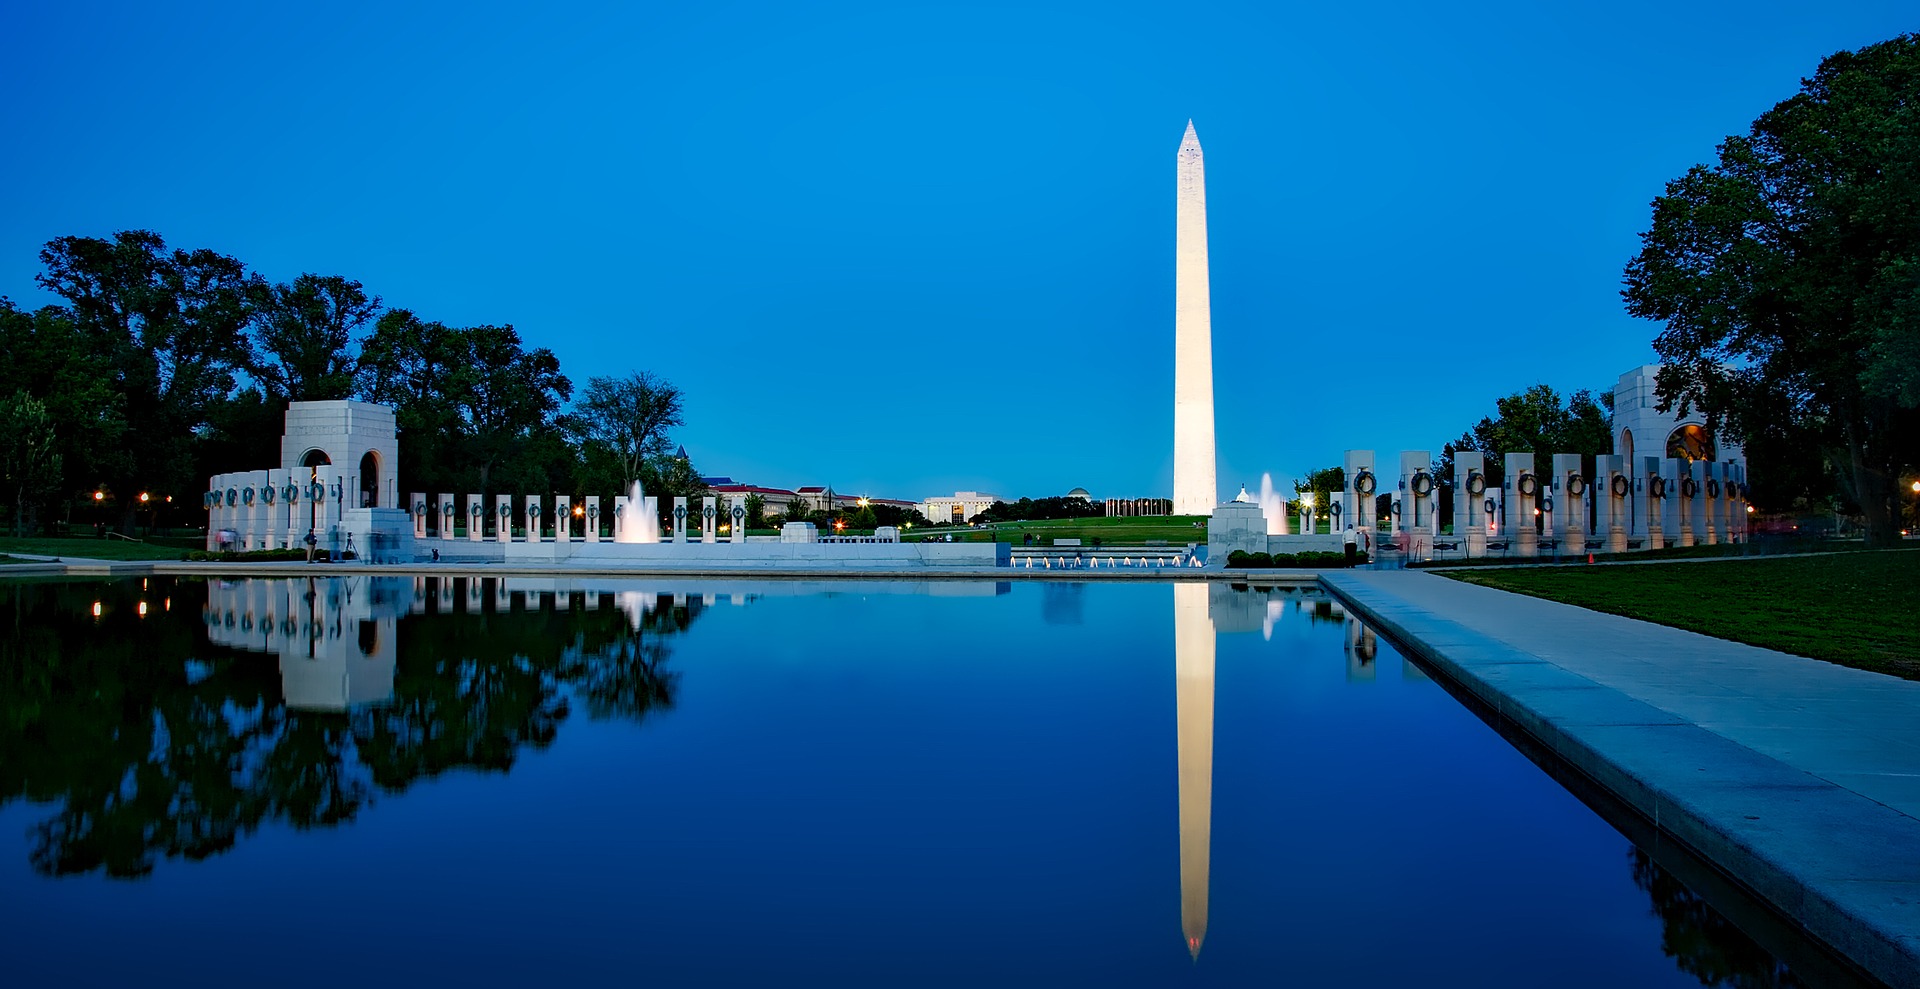 Washington monument 1628558 1920